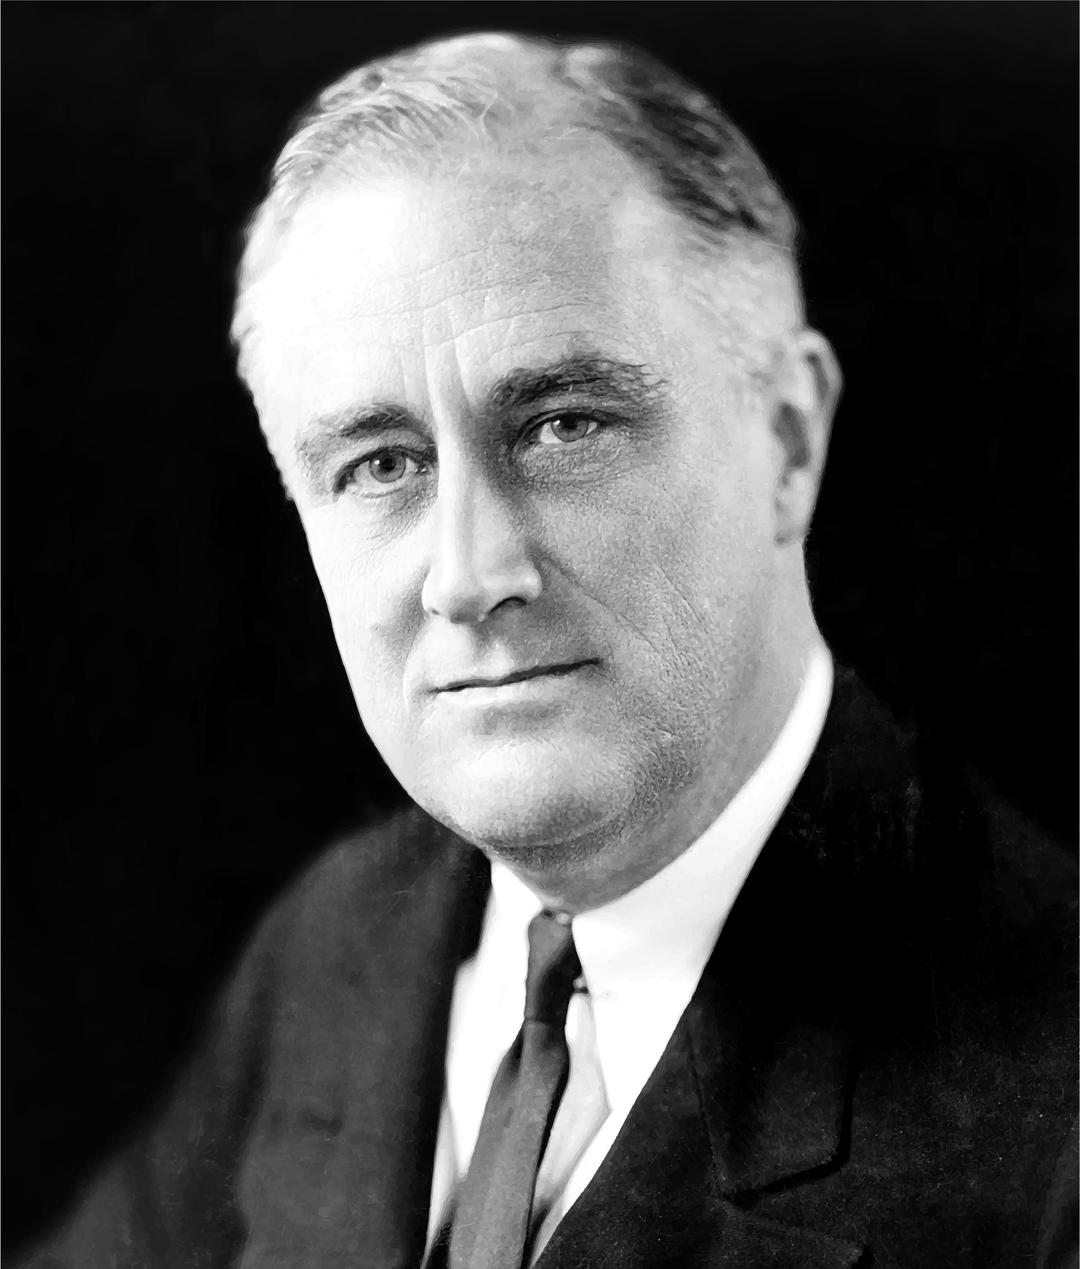 FDR (Franklin Delano Roosevelt) Portrait png transparent